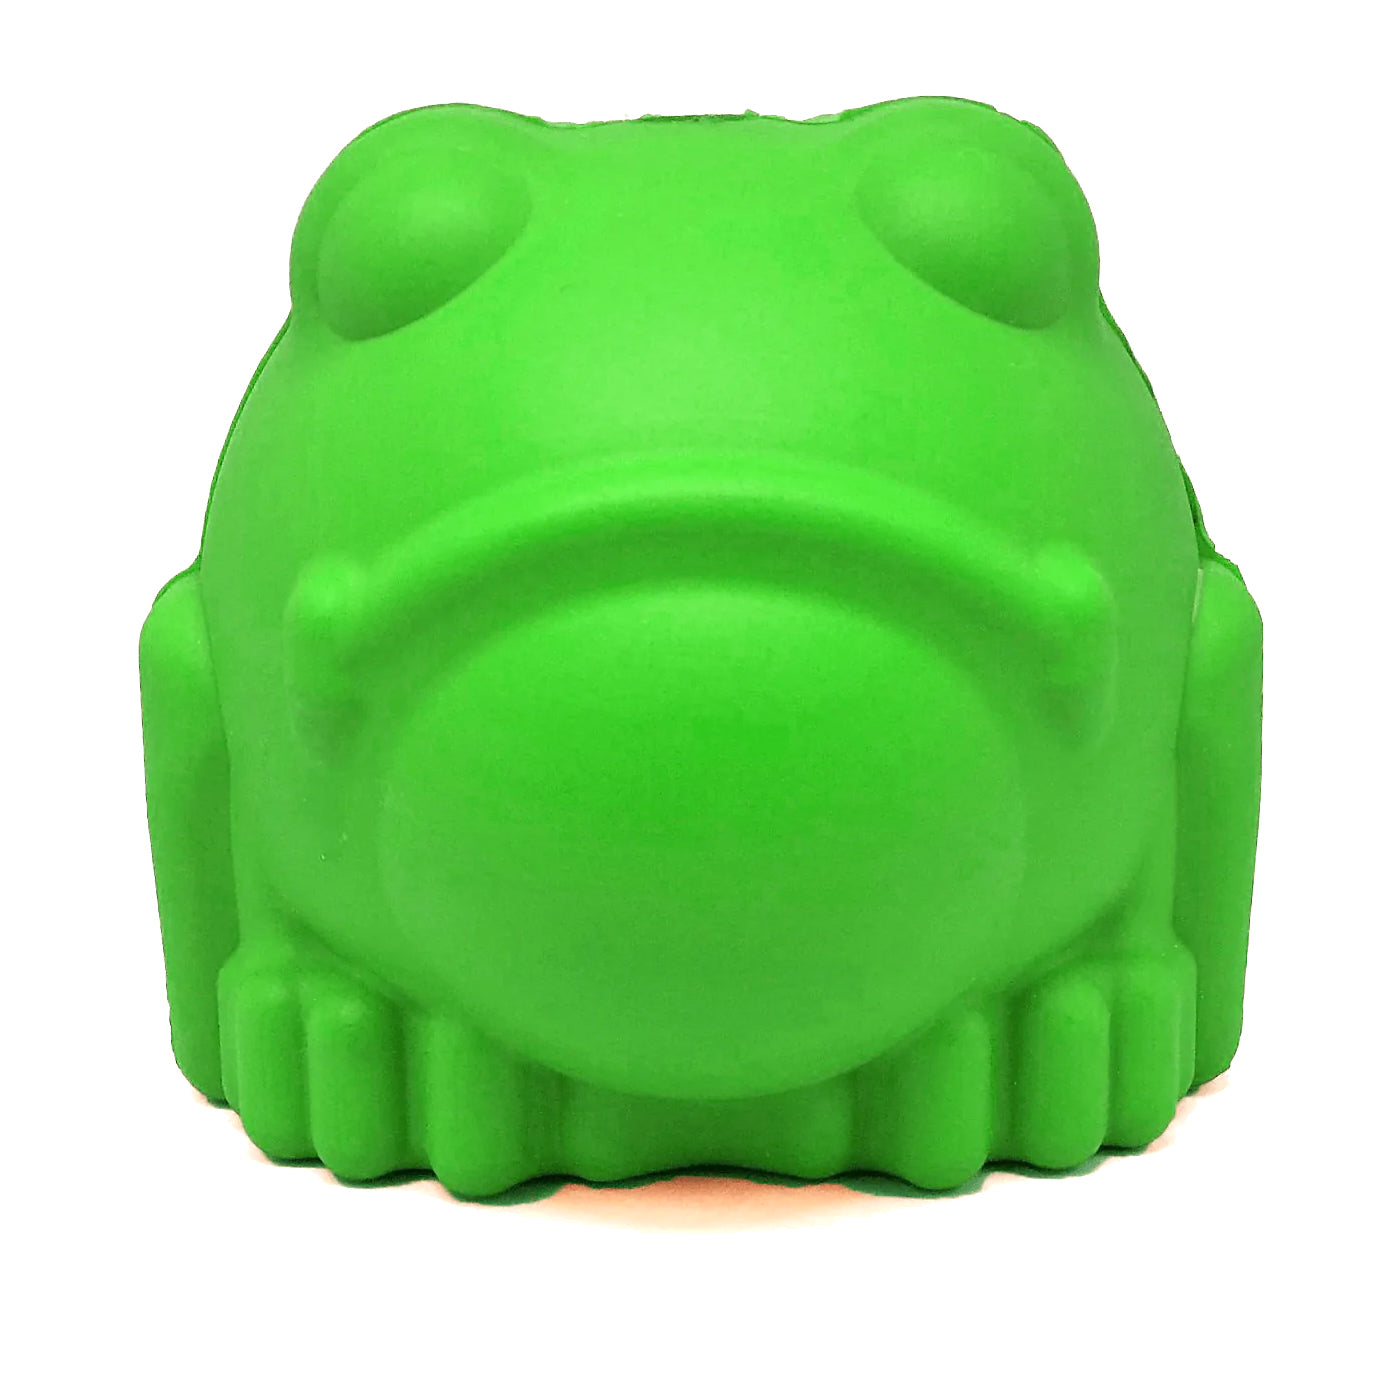 MKB Bull Frog Langlebiger Kauspielzeug- und Leckerlispender aus Gummi